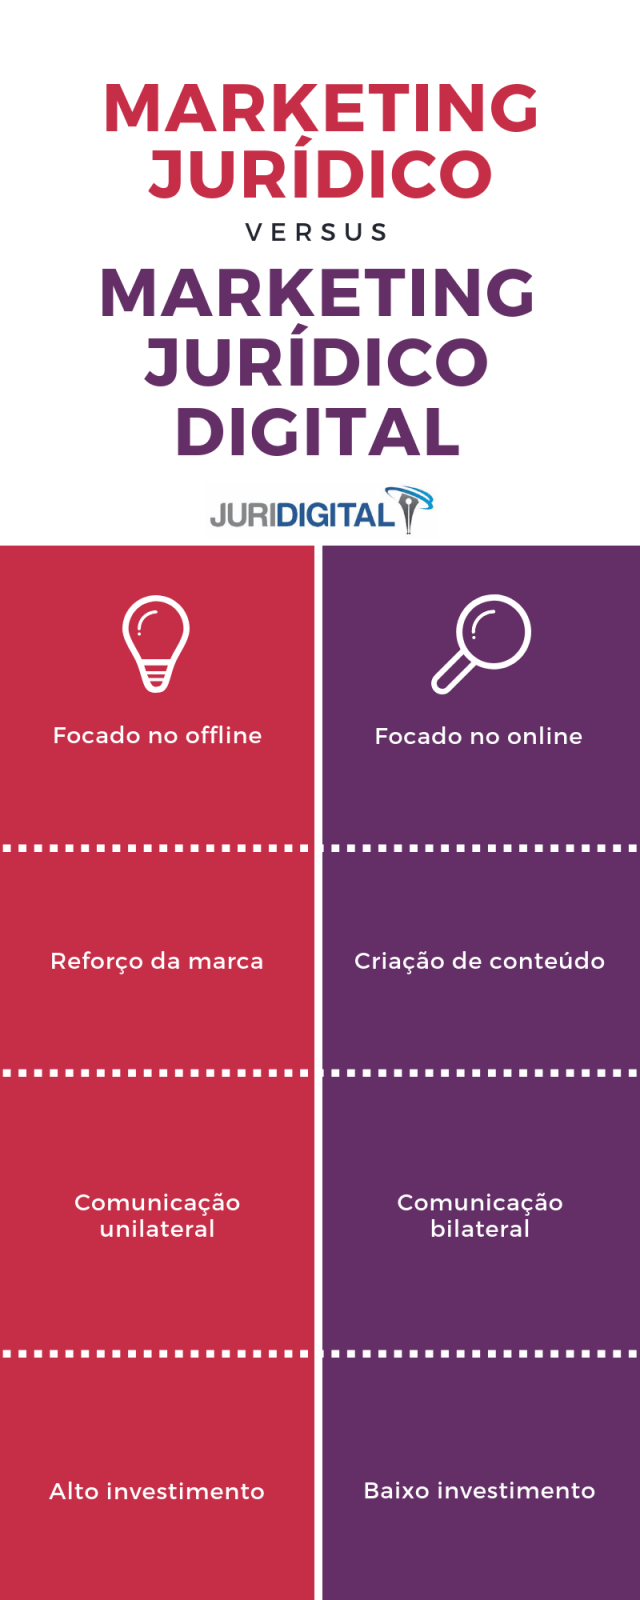 Imagem que mostra as diferenças entre marketing jurídico e marketing jurídico digital